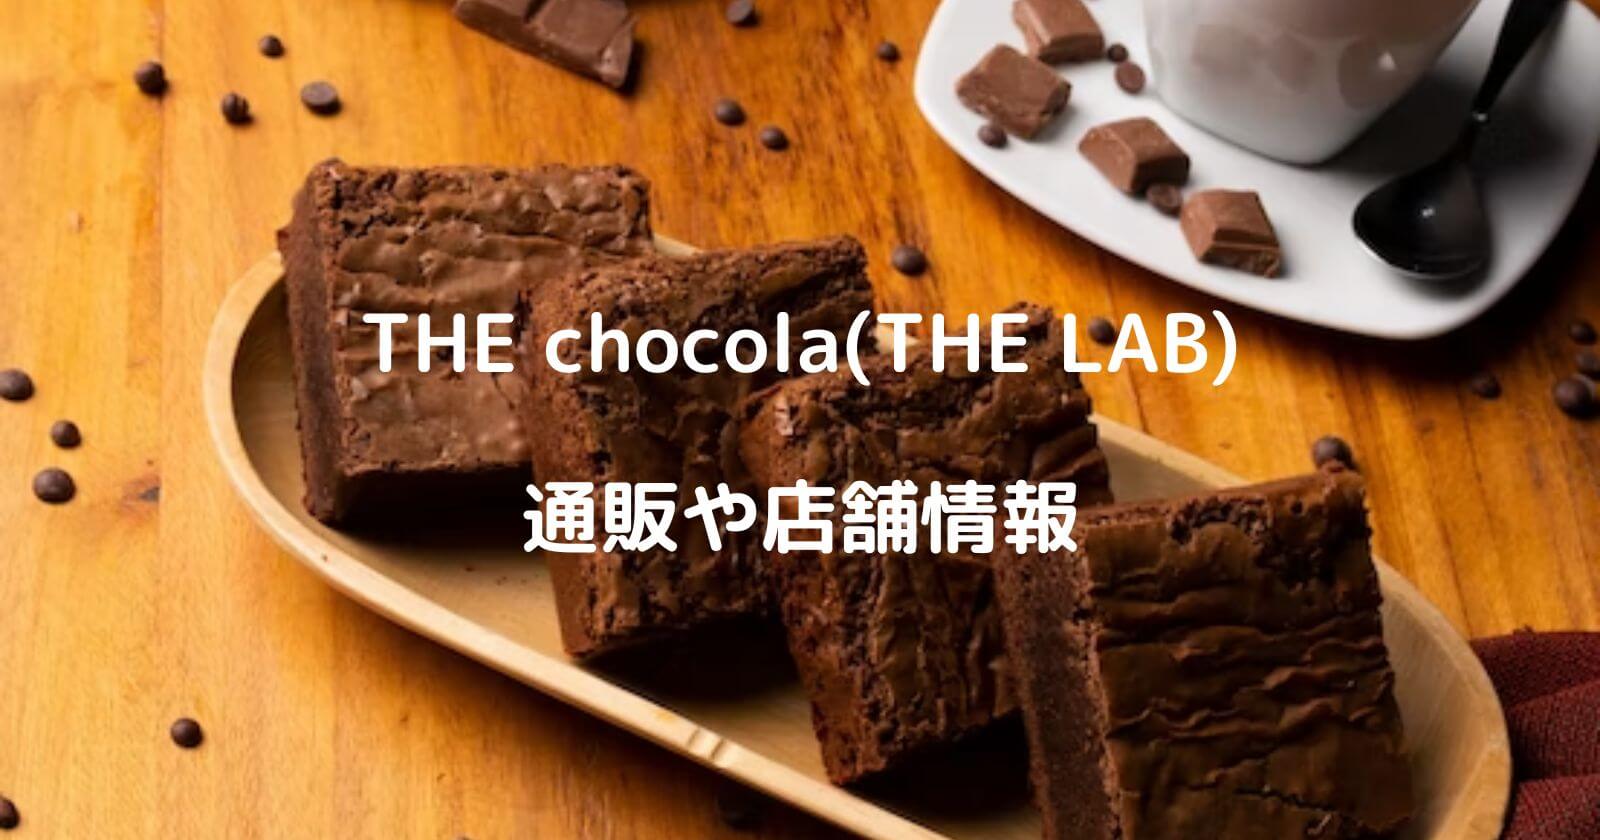 THE chocola(THE LAB)のお取り寄せ通販や店舗